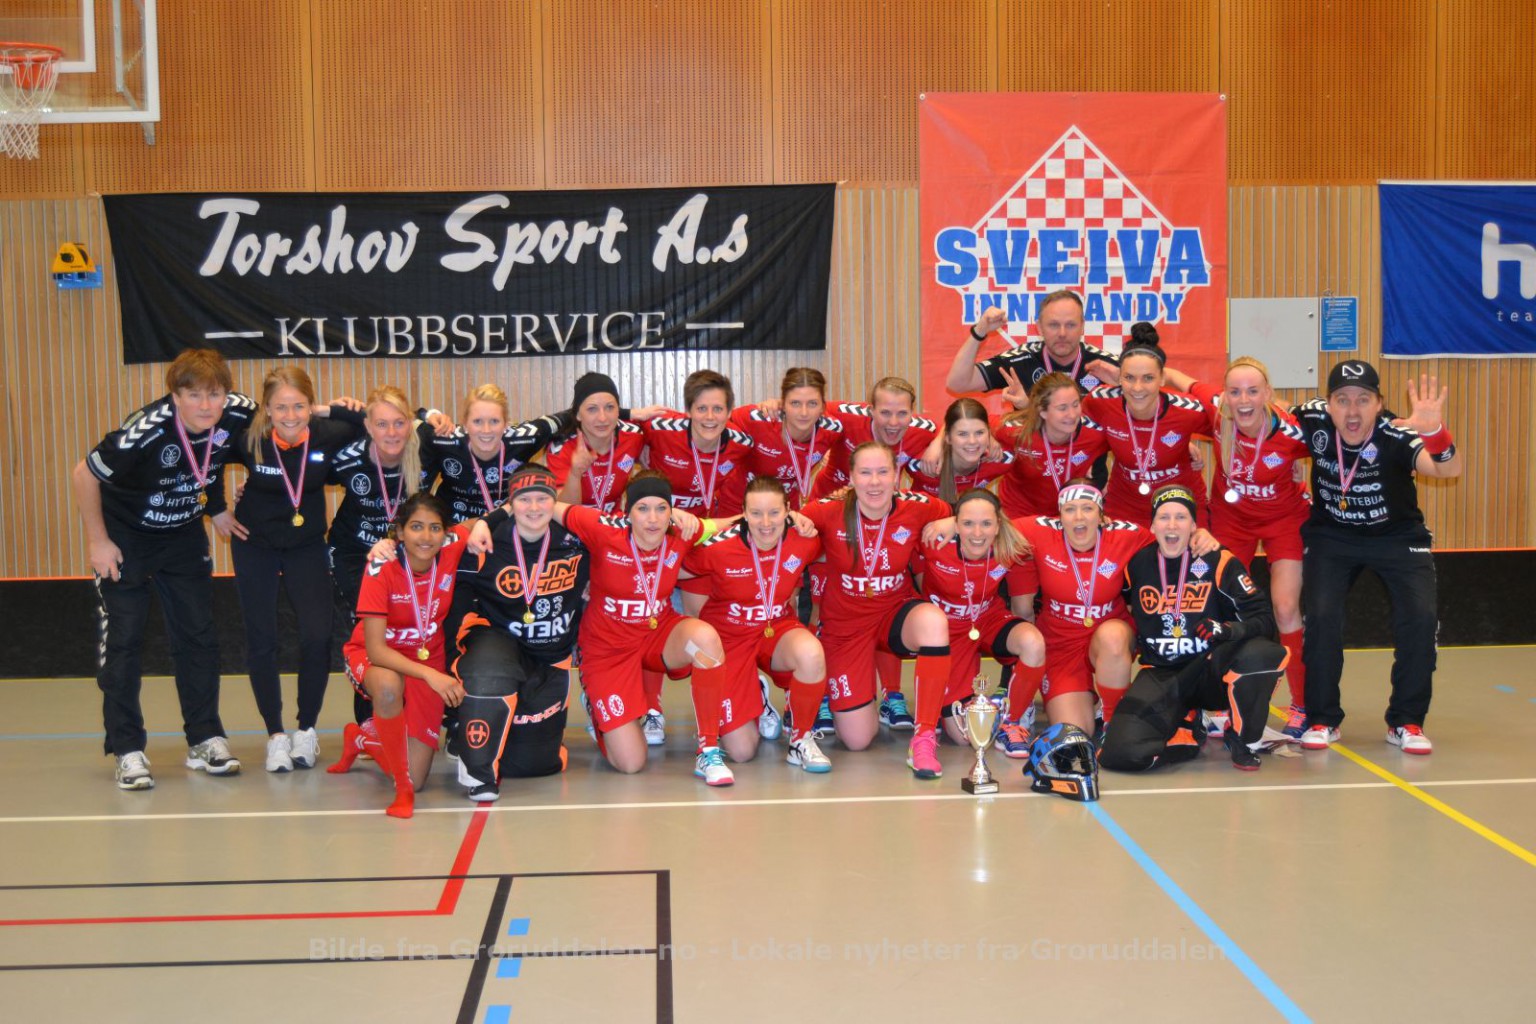 Sveiva-damenes imponerende sluttspurt de siste serieomgangene sikret klubbens 5. strake seriemesterskap.